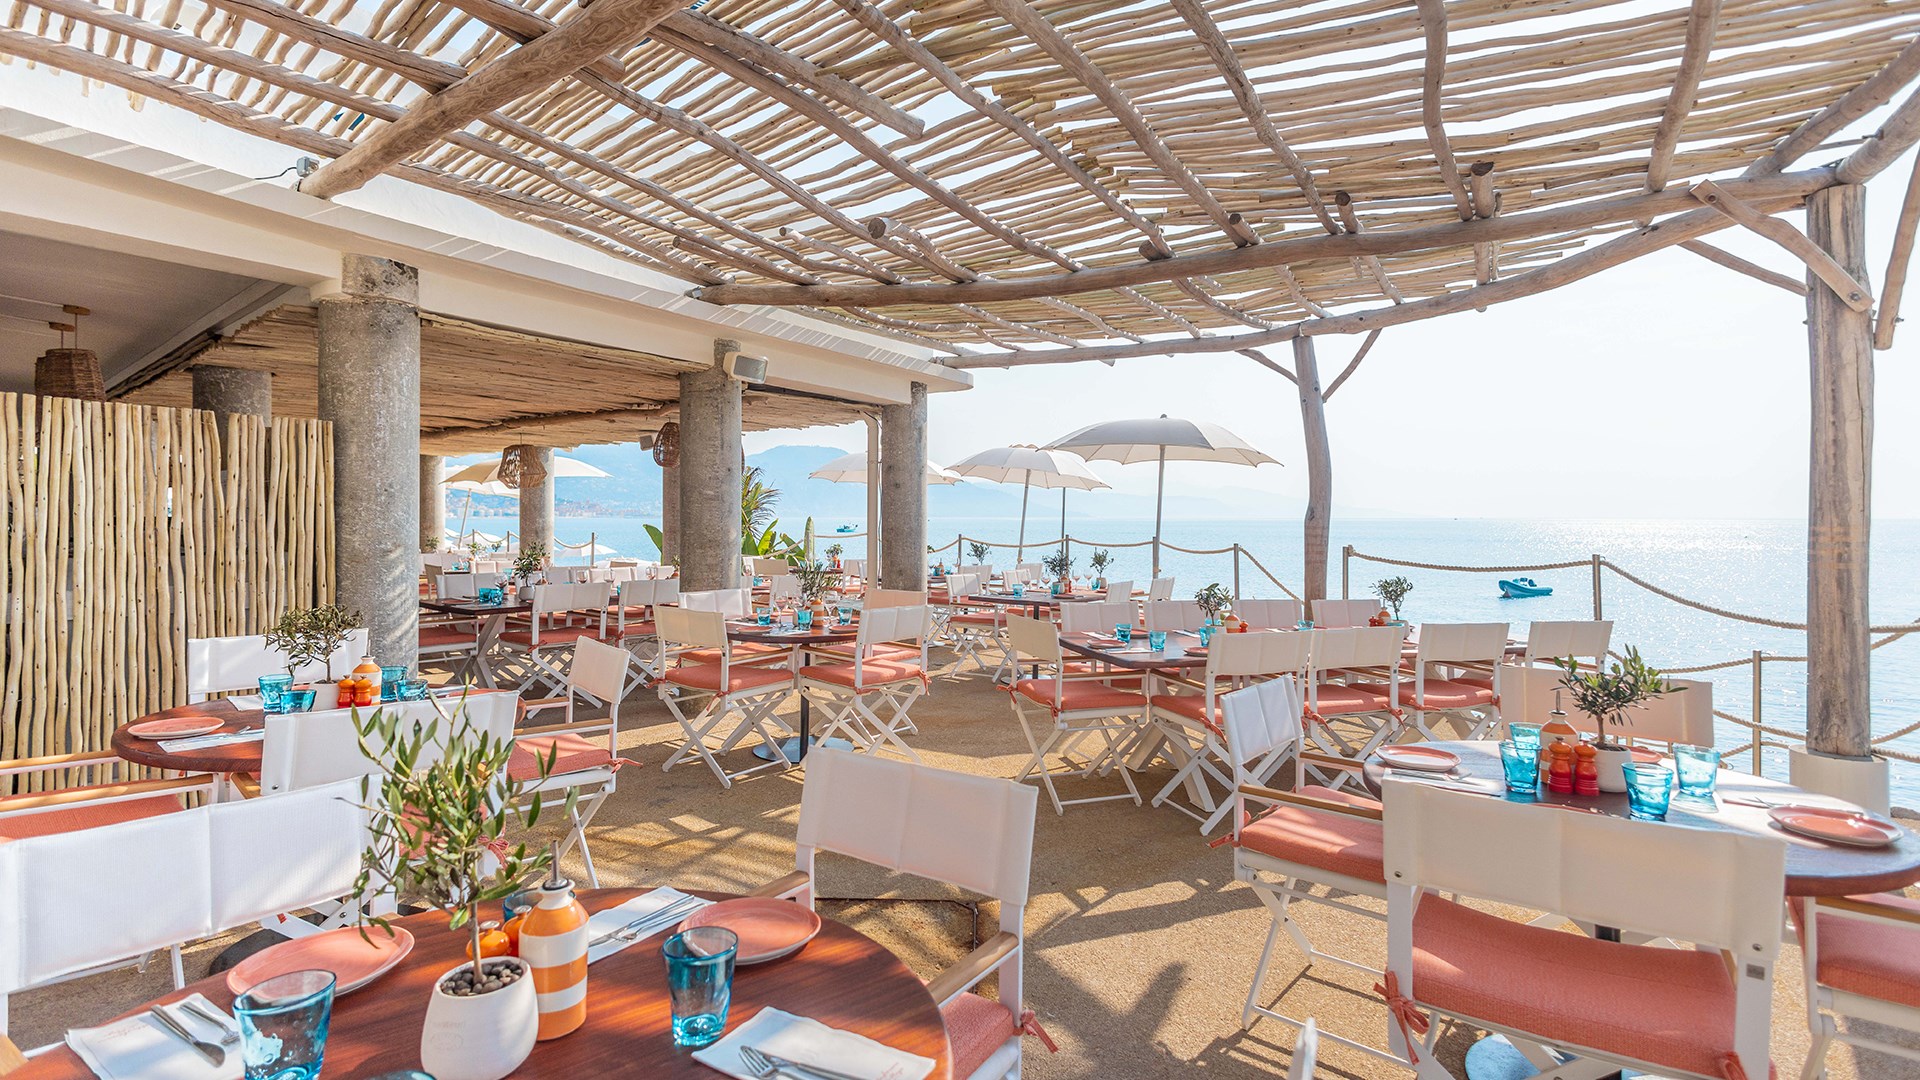 Maybourne La Plage - vue de la salle à manger avec des tables en bois rondes, des chaises blanches et corail et la vue sur la mer en fond.